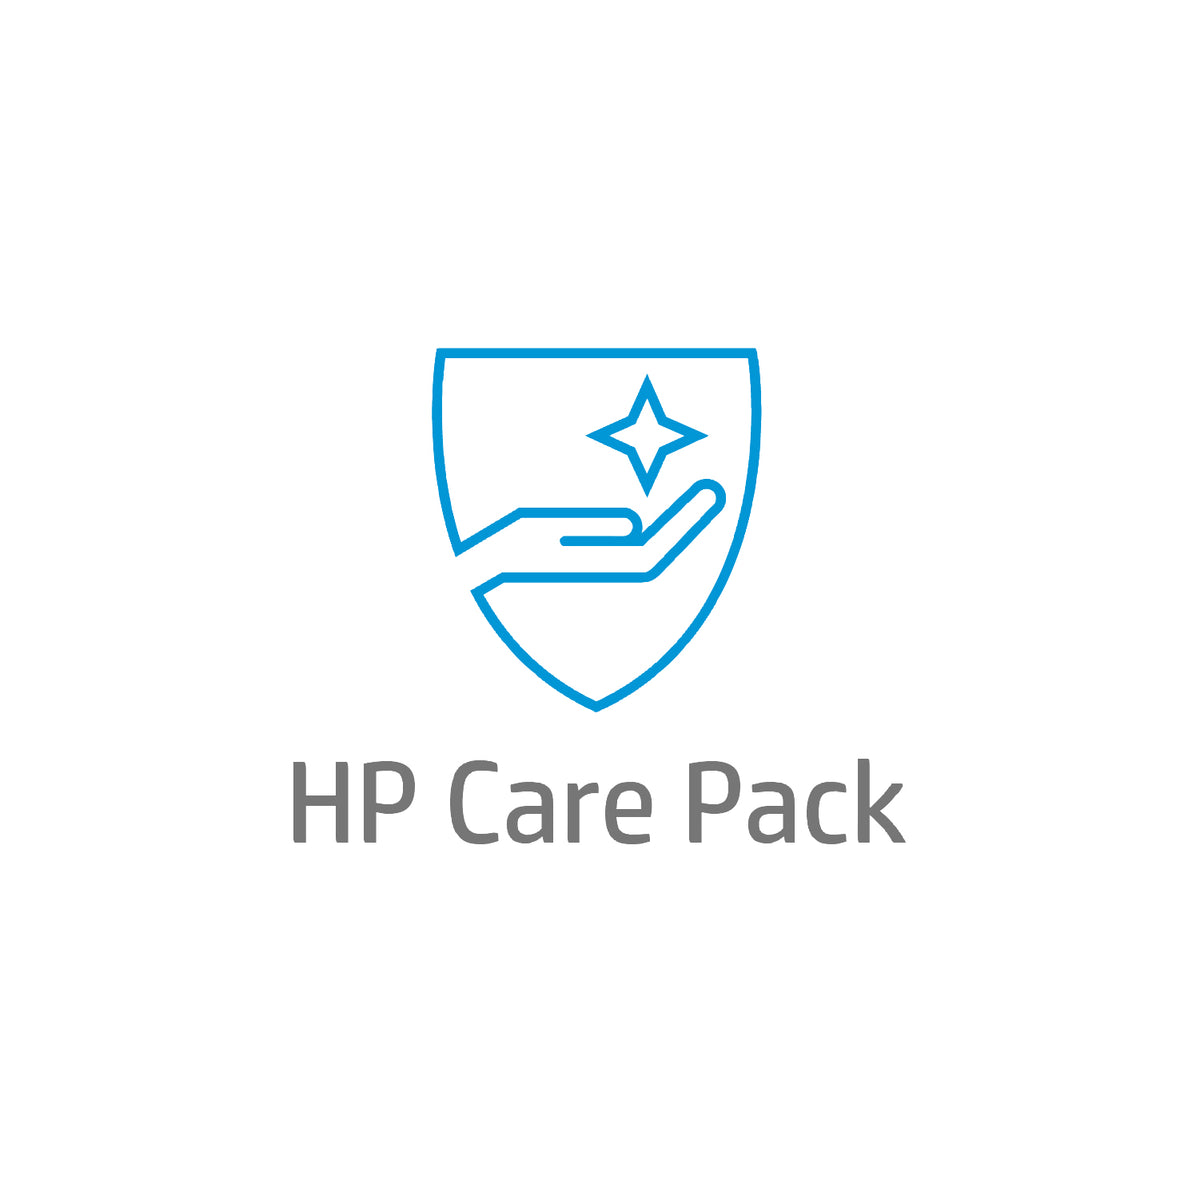 Soporte de hardware electrónico HP Care Pack al siguiente día laborable después de la garantía - Acuerdo de servicio ampliado - piezas y mano de obra (solo para el canal) - 2 años - in situ - tiempo de respuesta: NBD - para DesignJet T1600